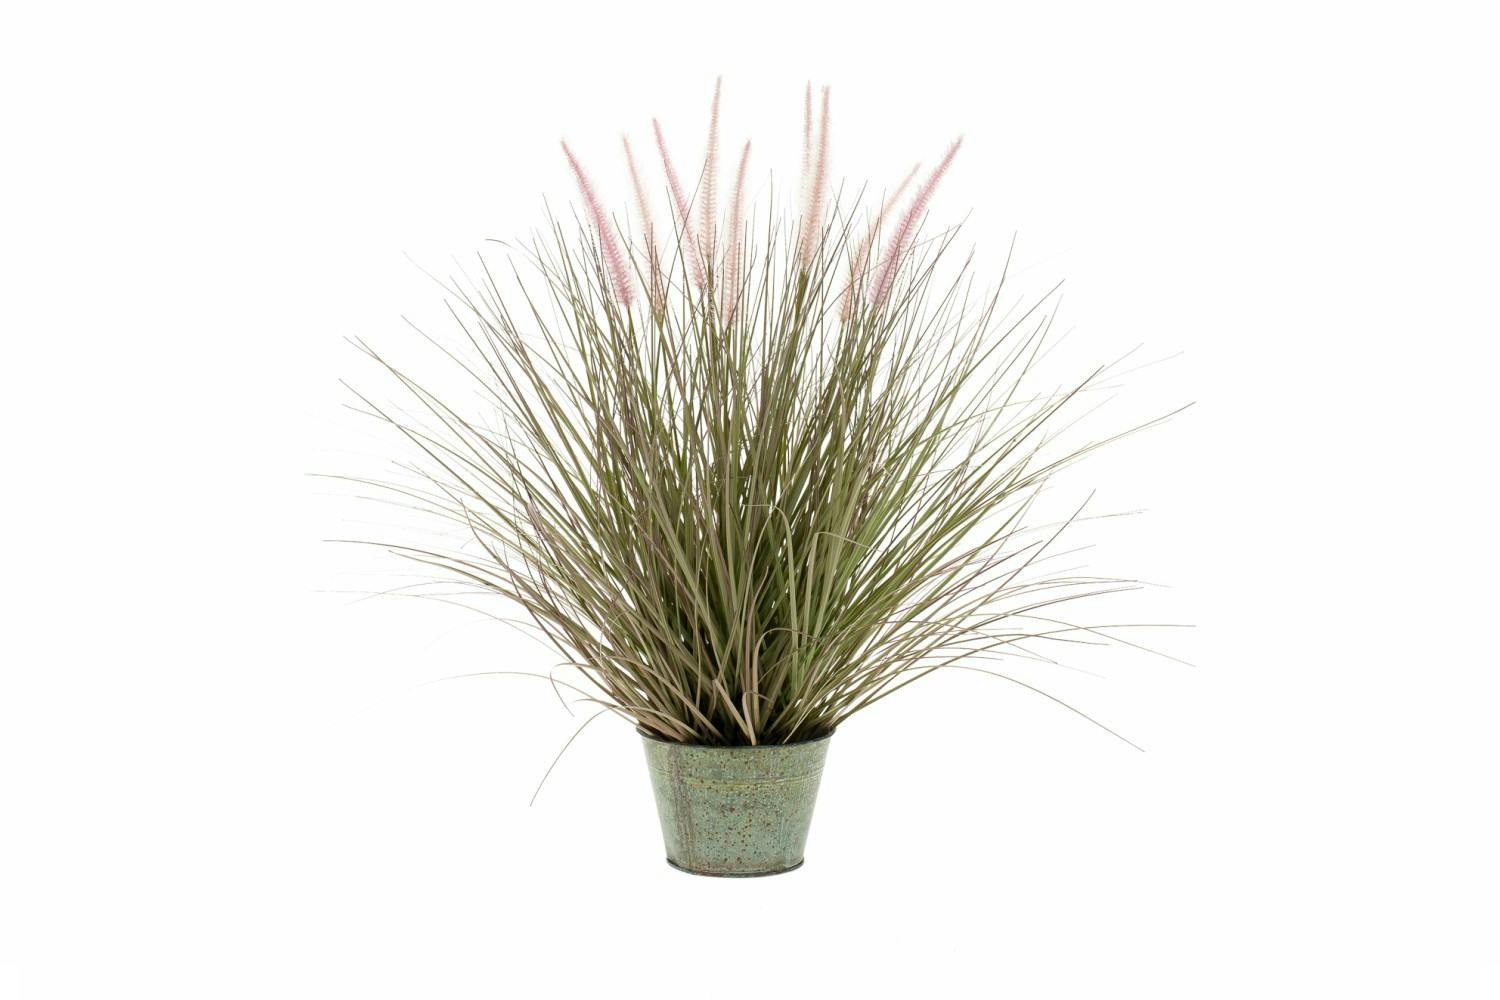 Pennisetum Grass In Zinc Pot